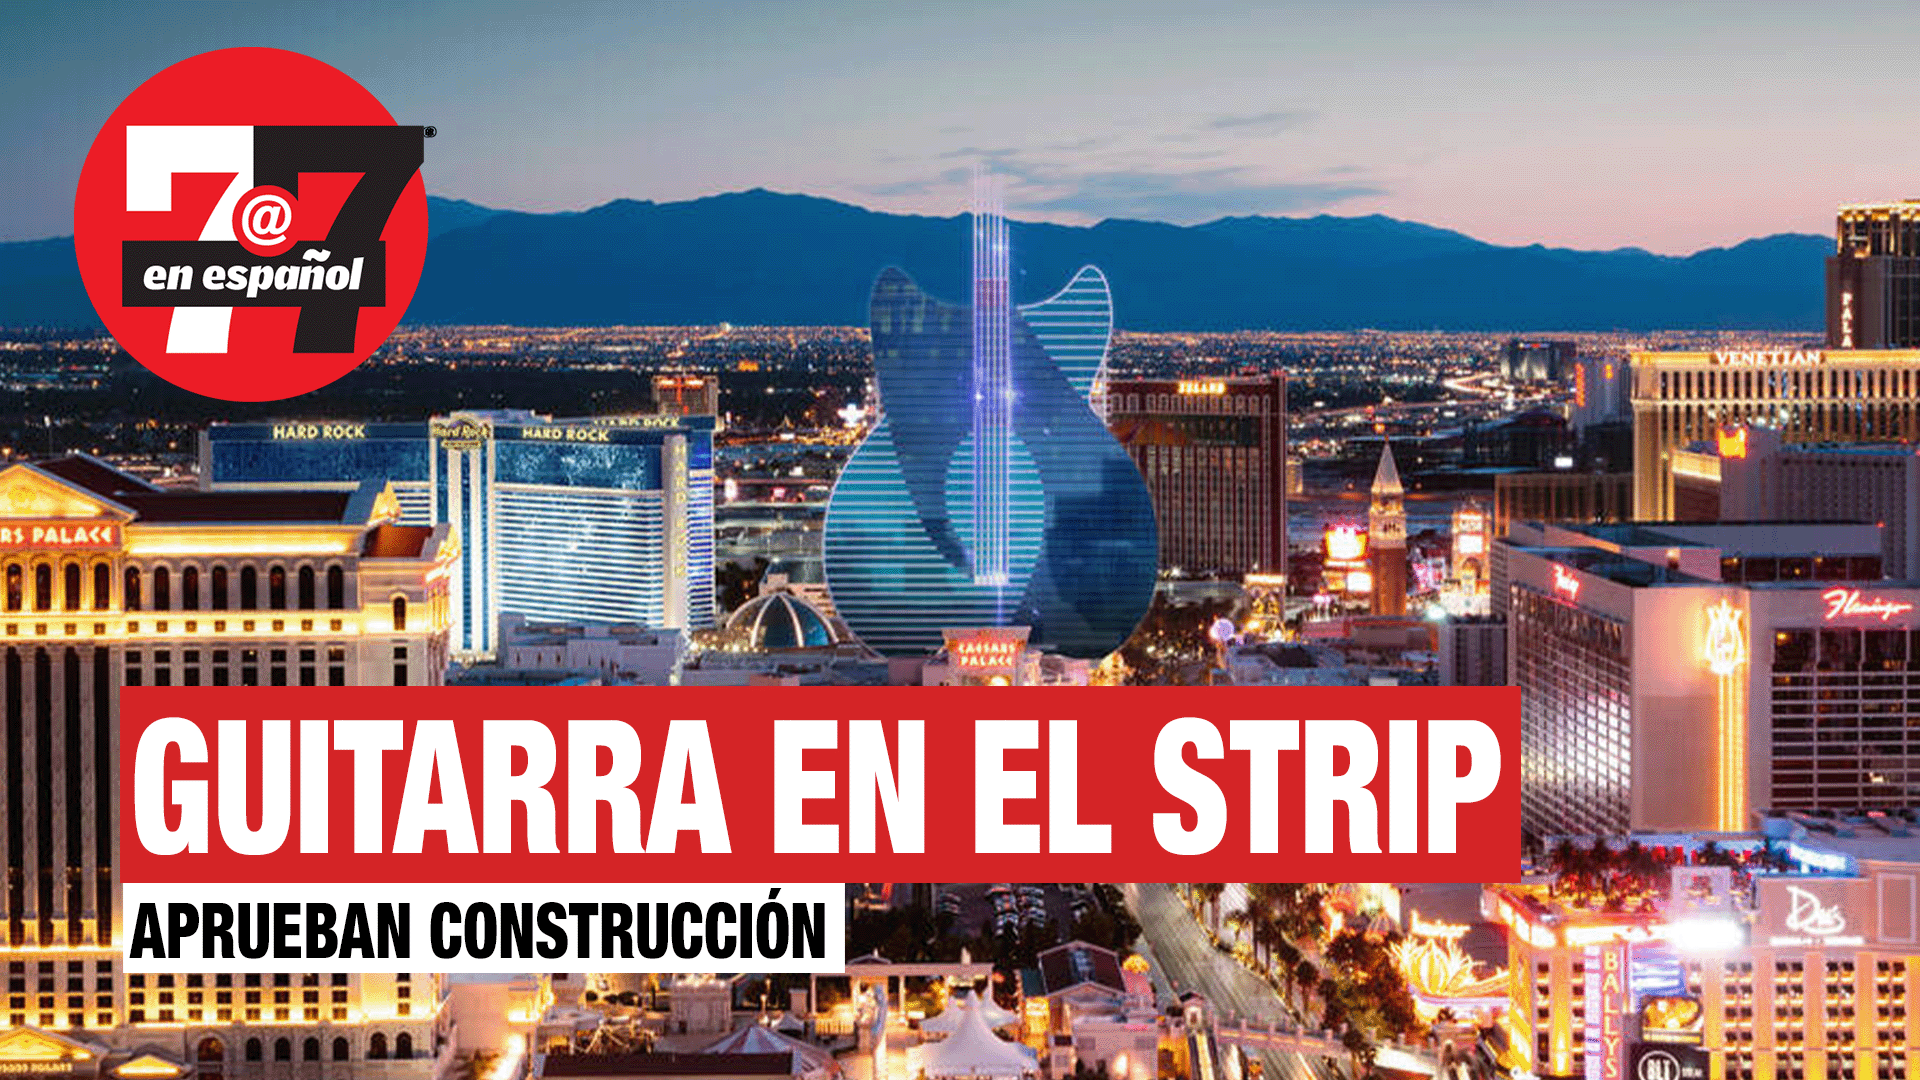 Noticias de Las Vegas | Aprueban construcción de guitarra en el Strip